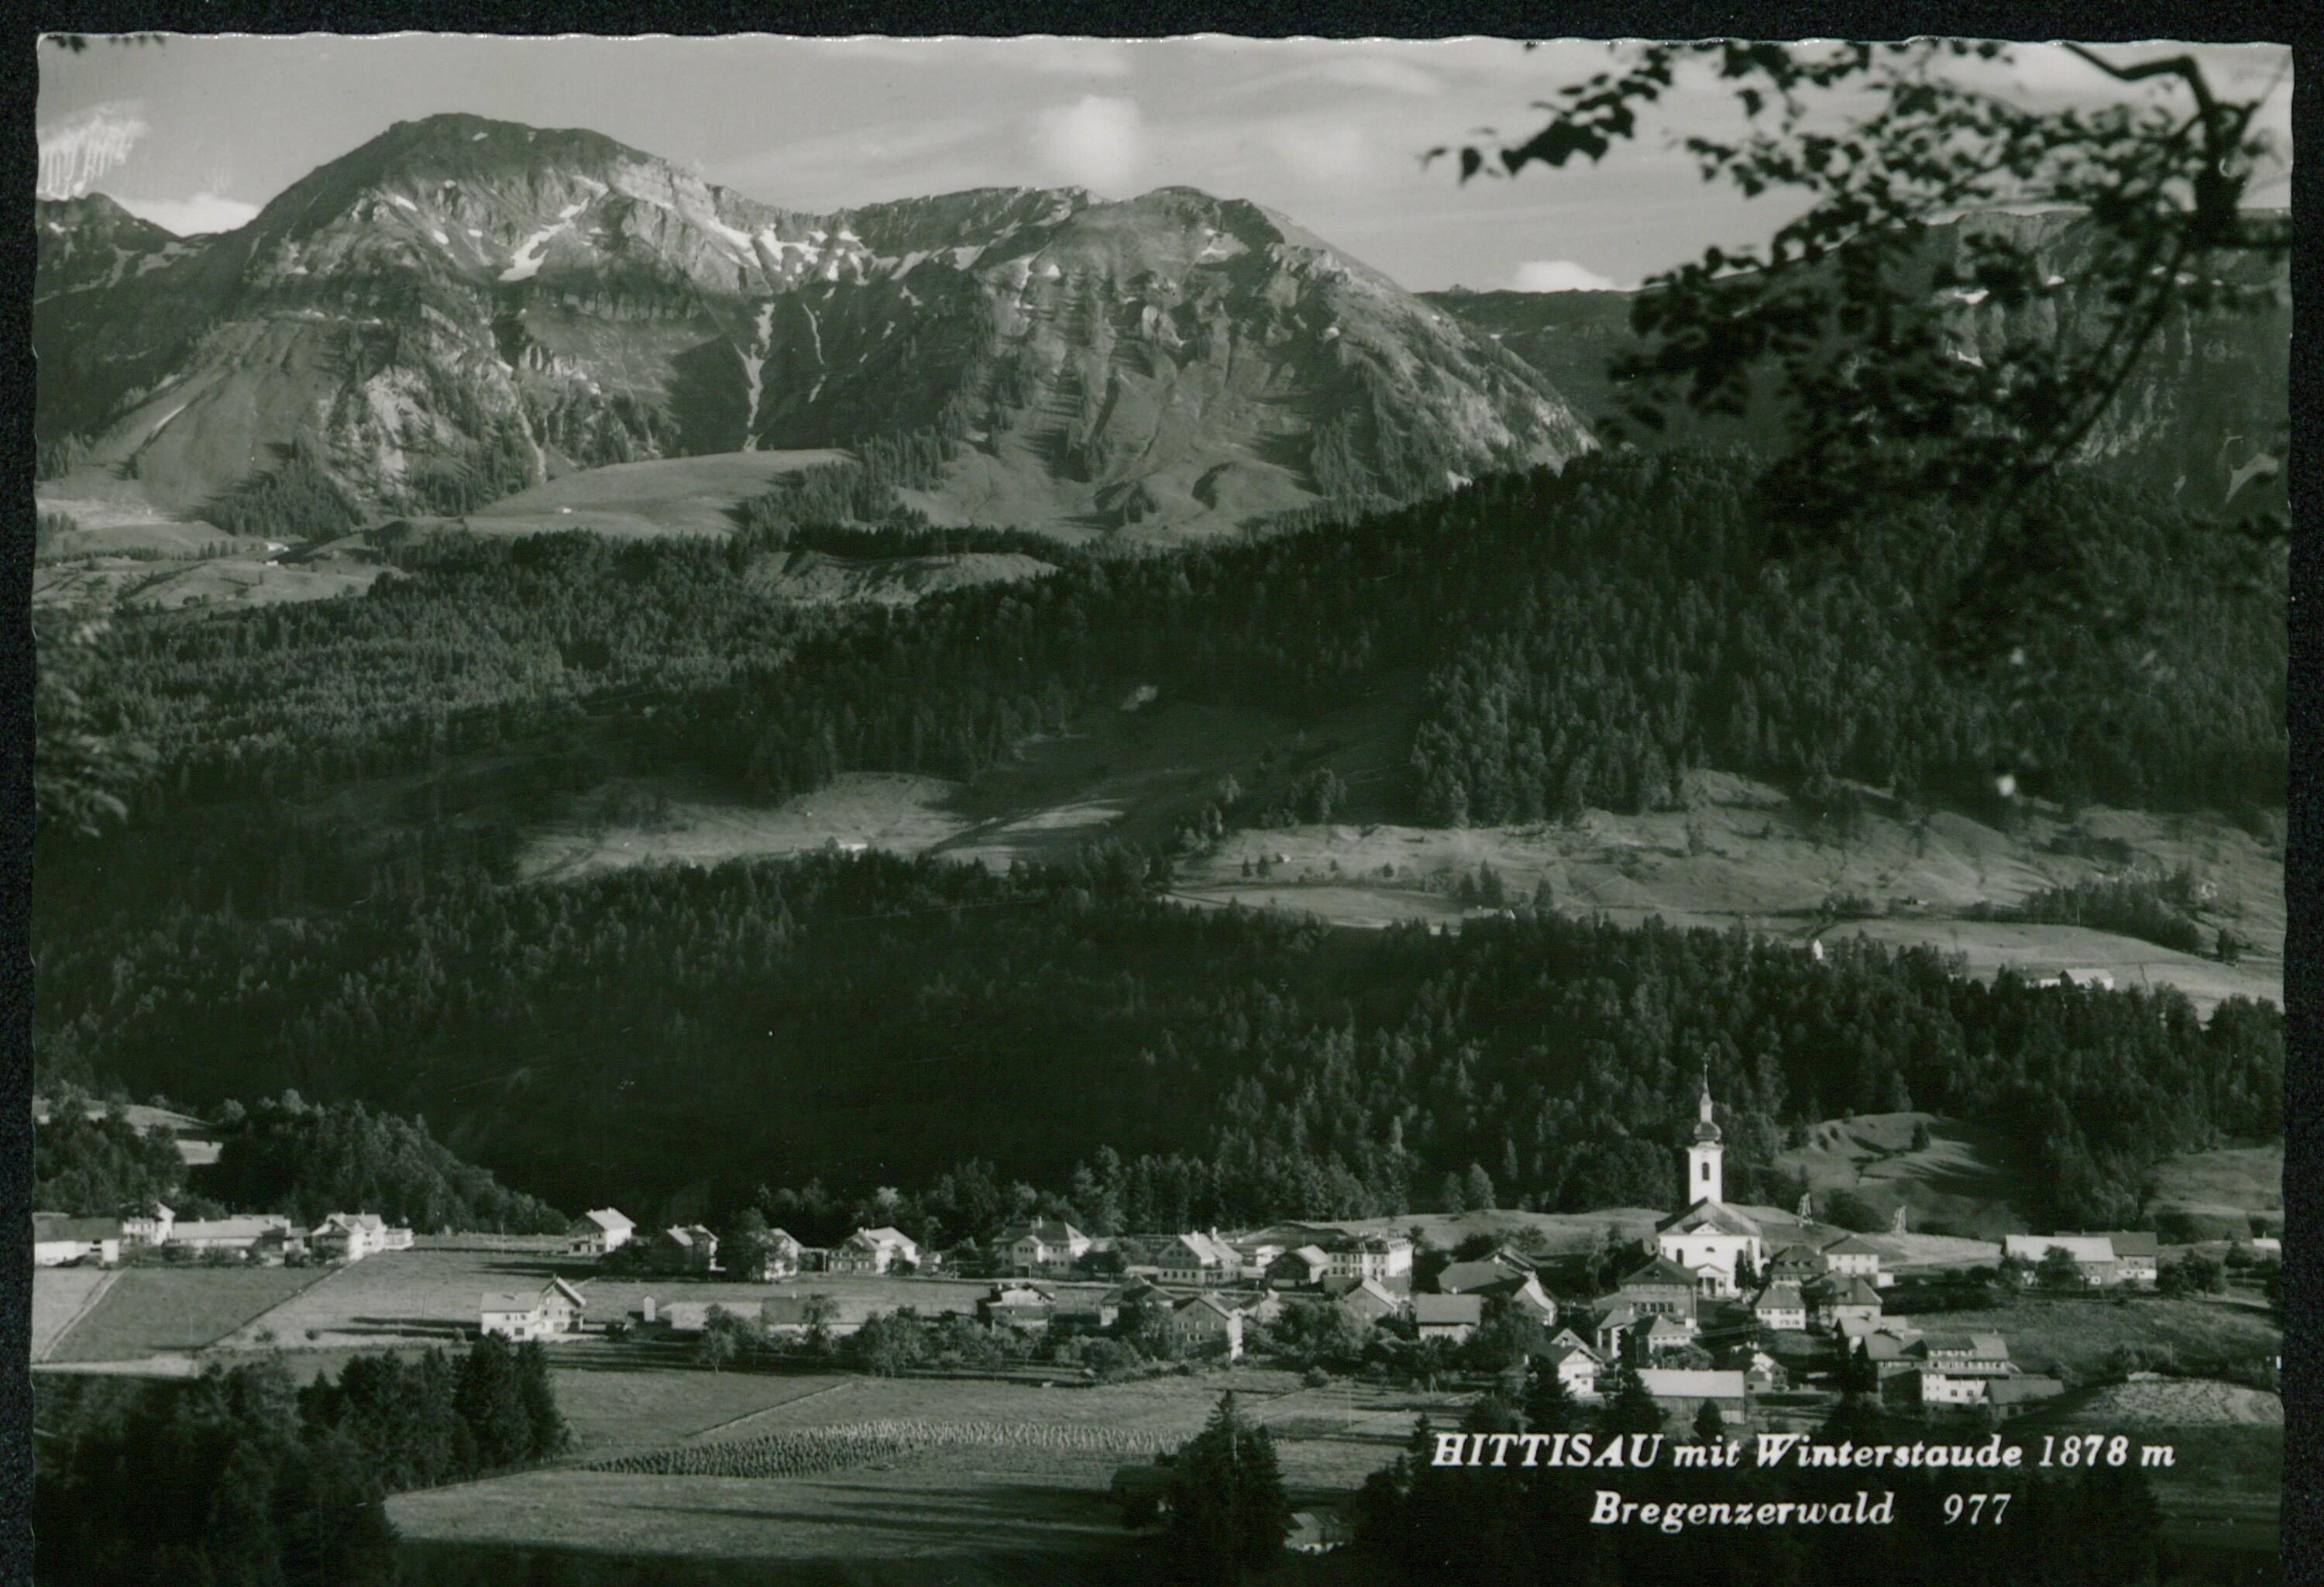 Hittisau mit Winterstaude 1878 m Bregenzerwald></div>


    <hr>
    <div class=